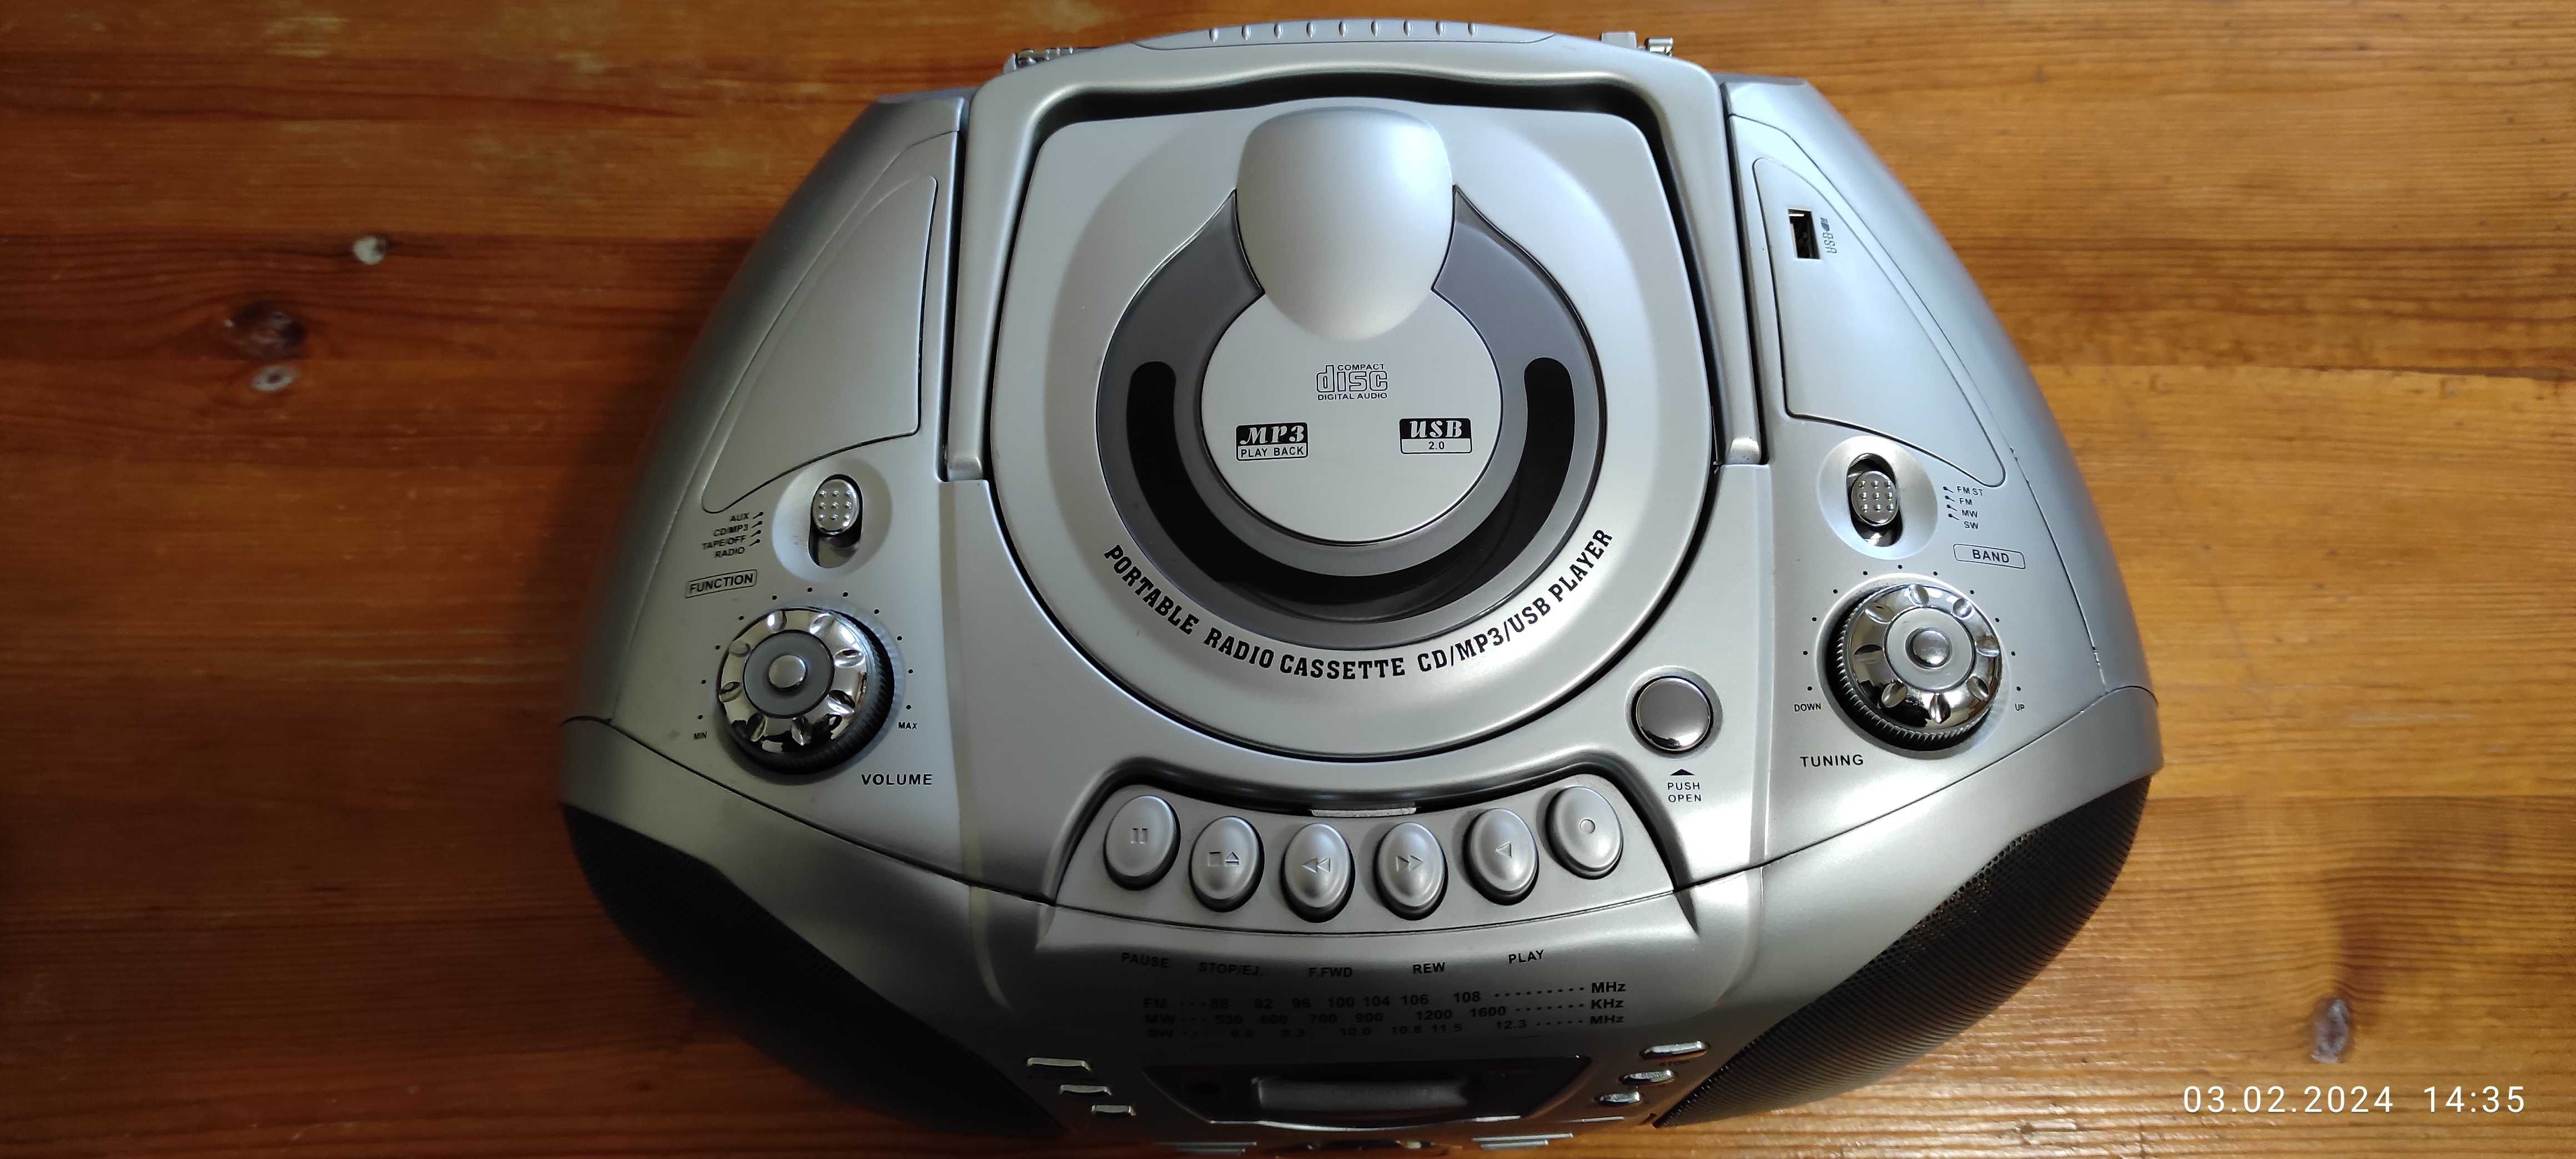 магнитола магнитофон LG - CM181USB CD MP3 USB кассета радио FM